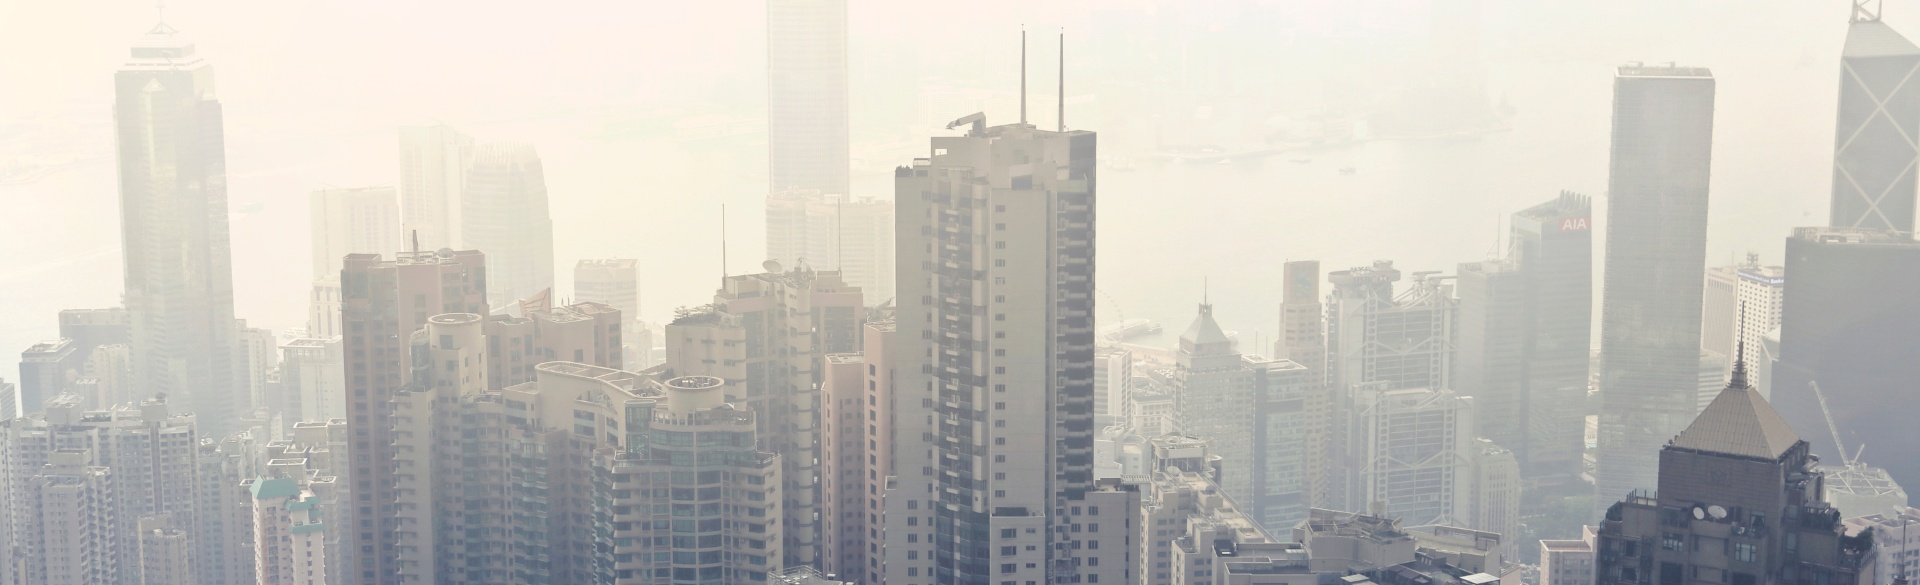 Smog in cityscape